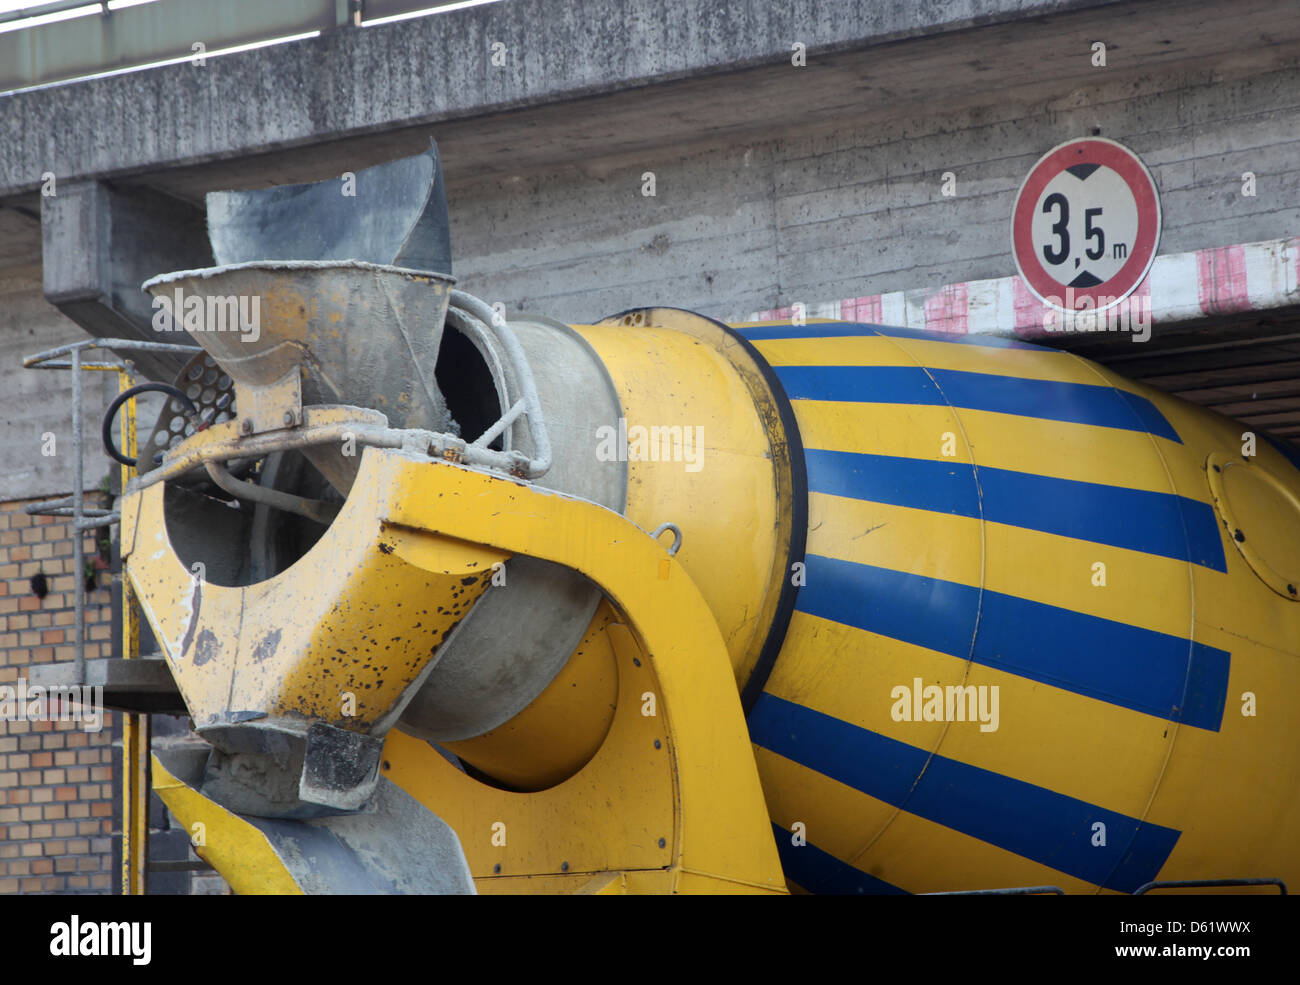 Una hormigonera ha quedado atascado bajo un puente del ferrocarril en Vallendar, Alemania, 03 de mayo de 2012. El túnel sólo permite coches tp una altura de 3,5 m. El camión fue de alrededor de 30 cm de alto. El tráfico ferroviario se vio interrumpido hasta que se haya determinado si la estática del puente había tenido daños. Nadie resultó herido. Foto: Thomas Frey Foto de stock